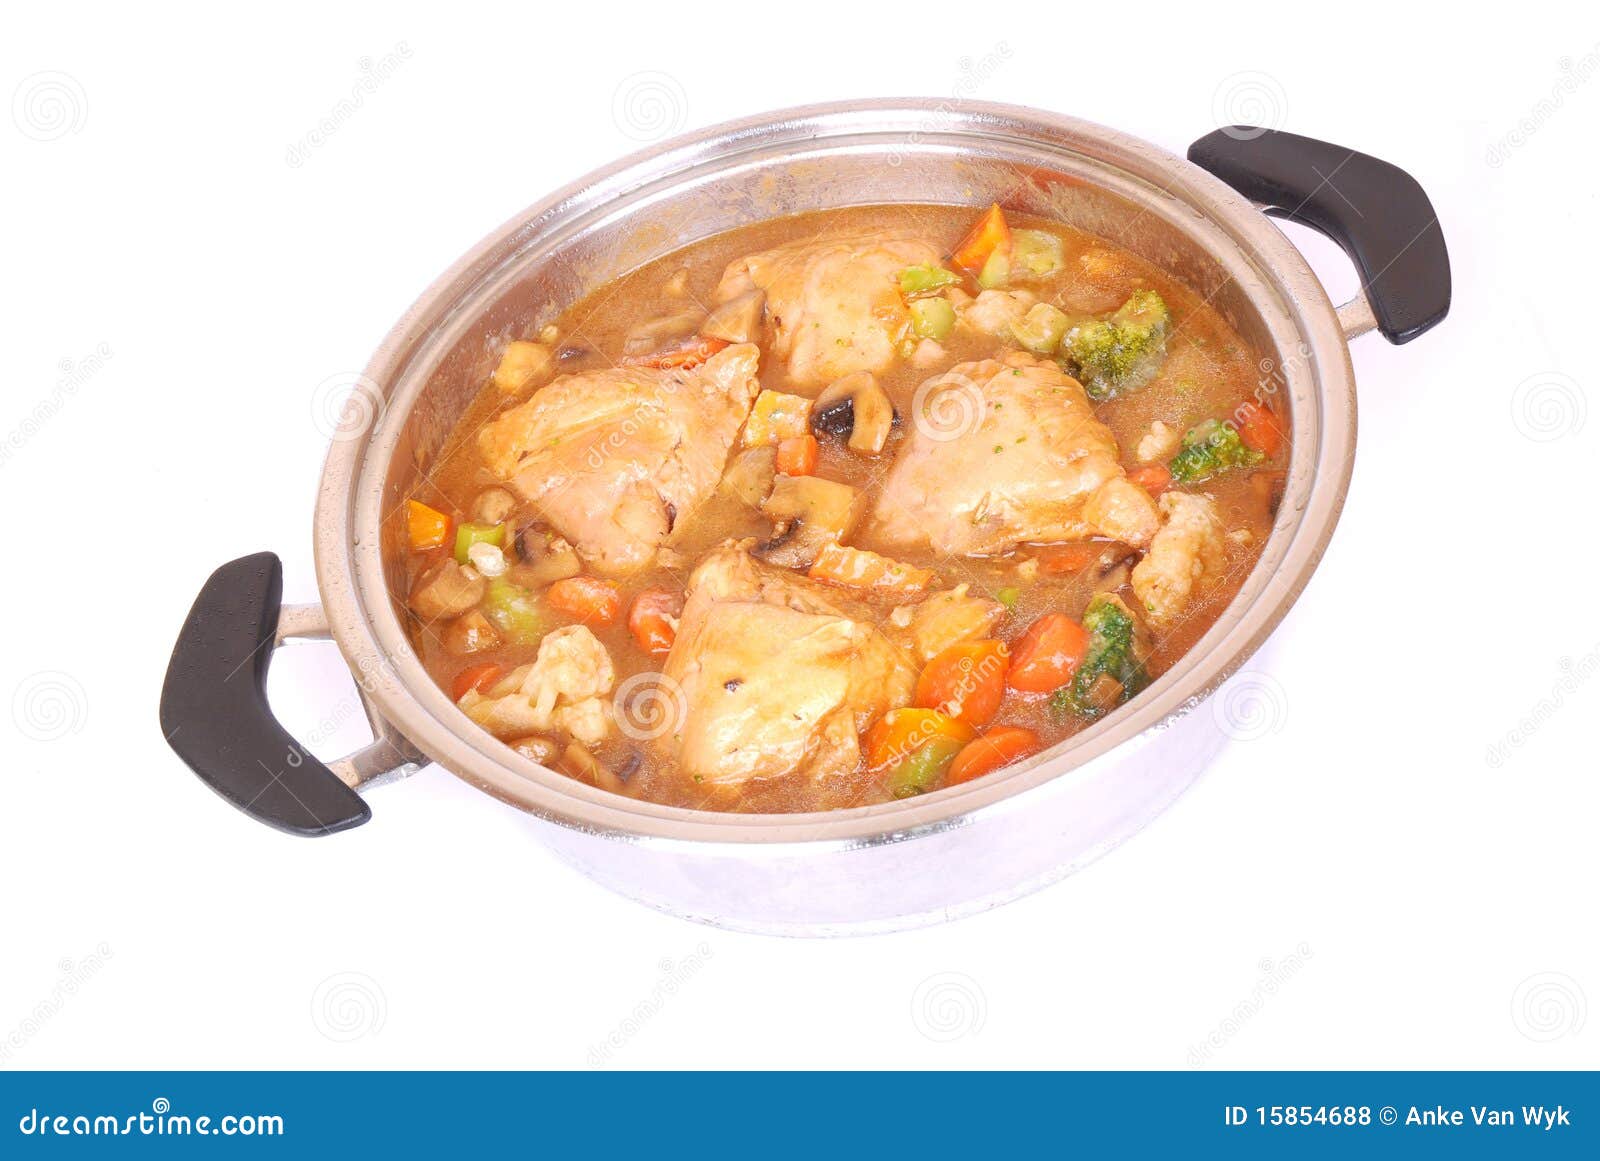 chicken stew clipart - photo #34